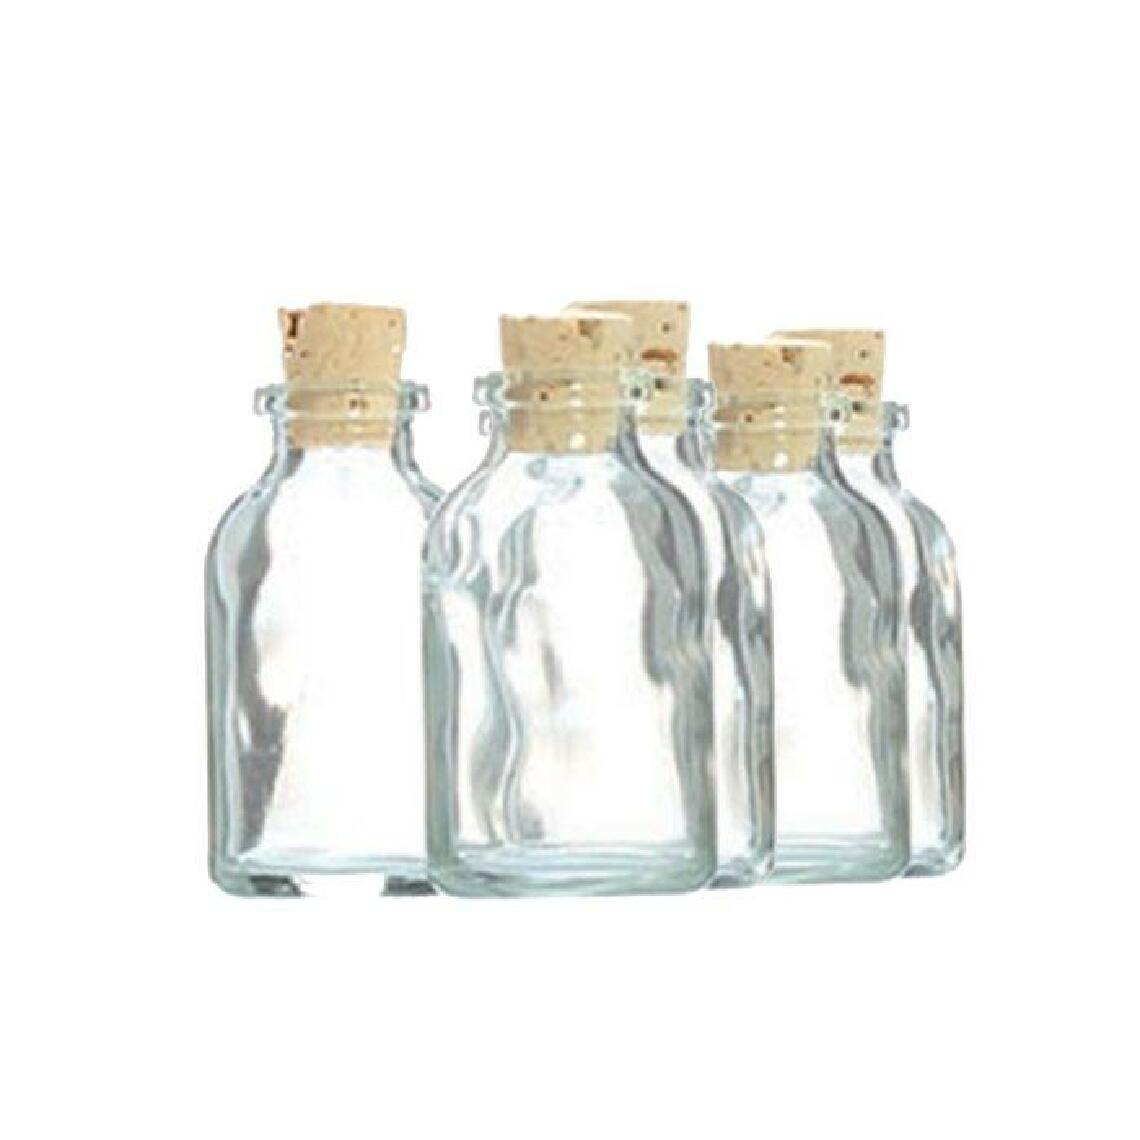 Graines Creatives - 5 mini bouteilles en verre 6 cm avec bouchon liège - Kits créatifs